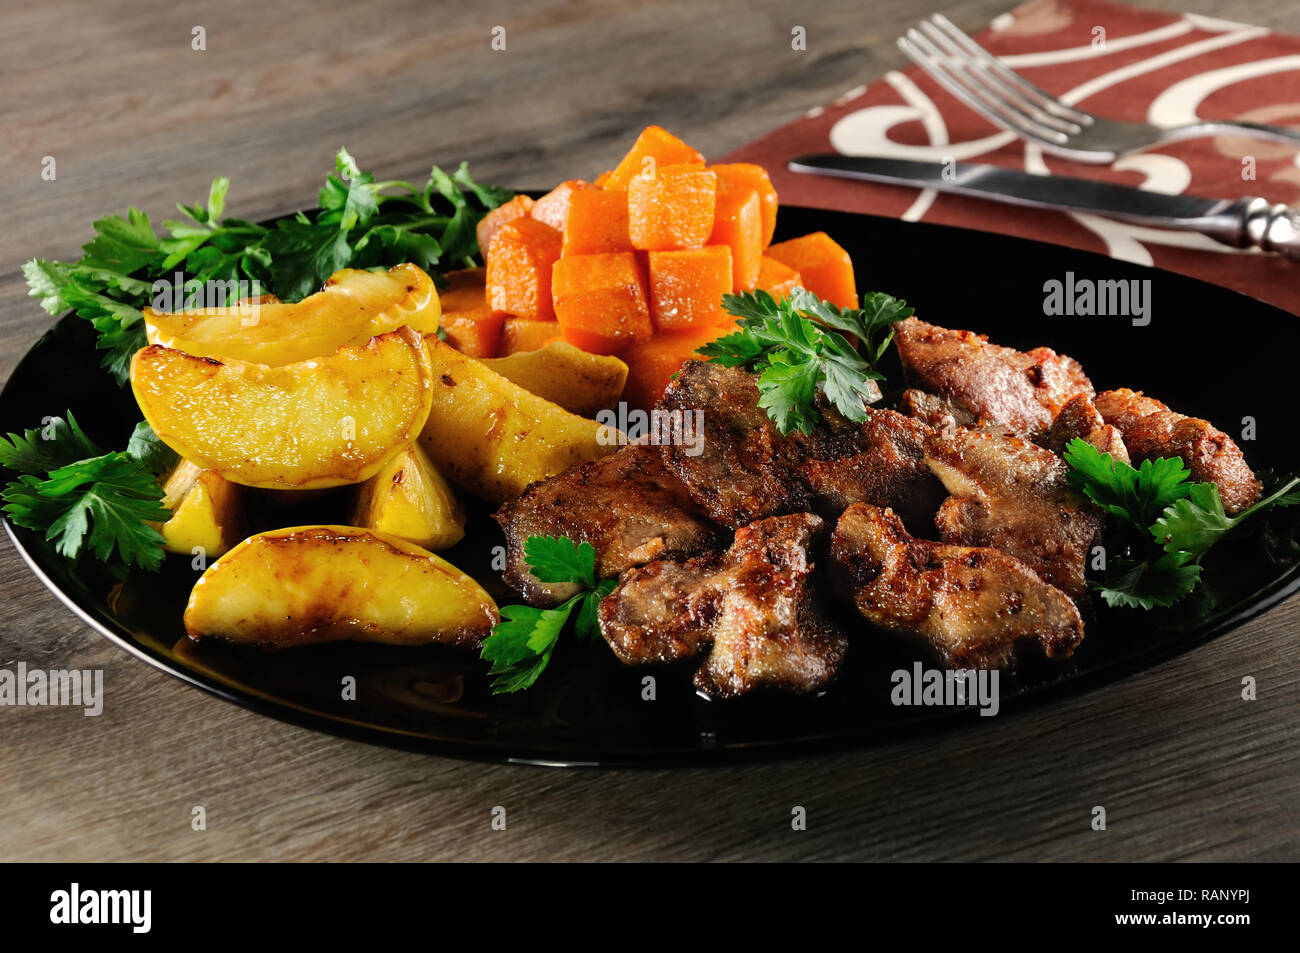 El hígado de pollo frito con guarnición de verduras, calabaza cocida y Apple. Foto de stock